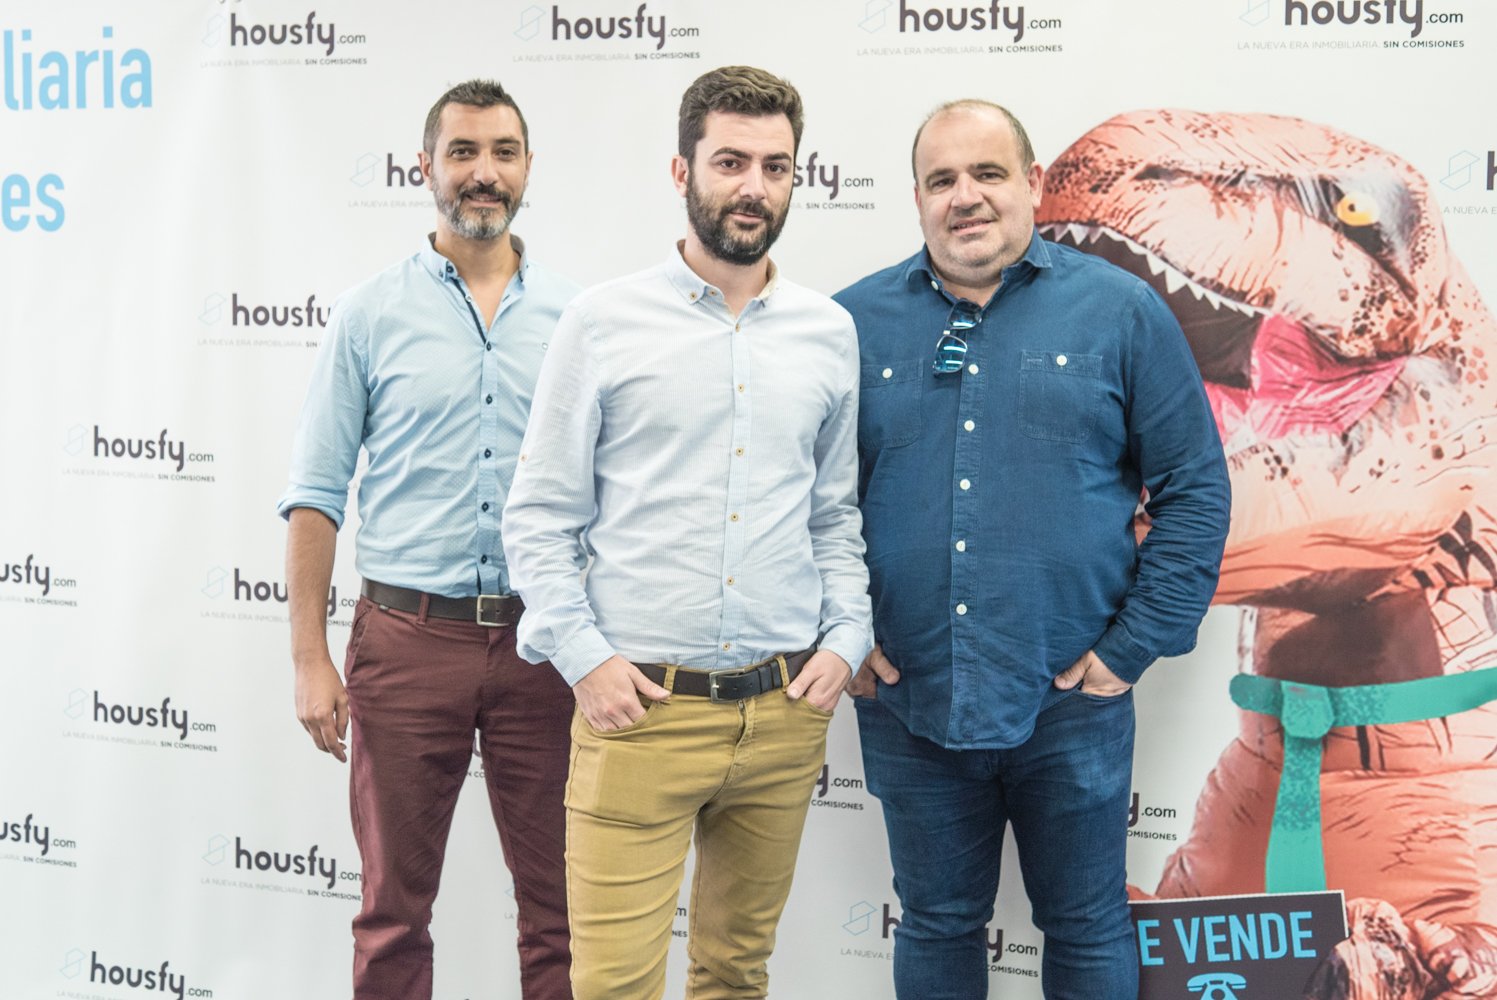 Housfy cierra una ronda de financiación de 6 millones para su expansión internacional